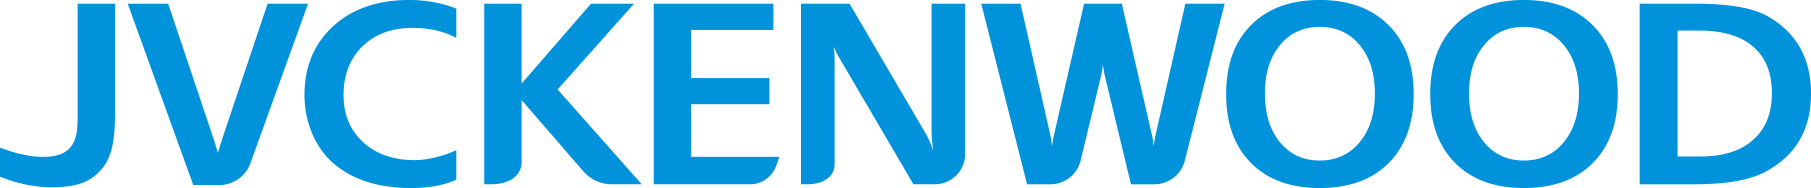 jvckenwood_logo